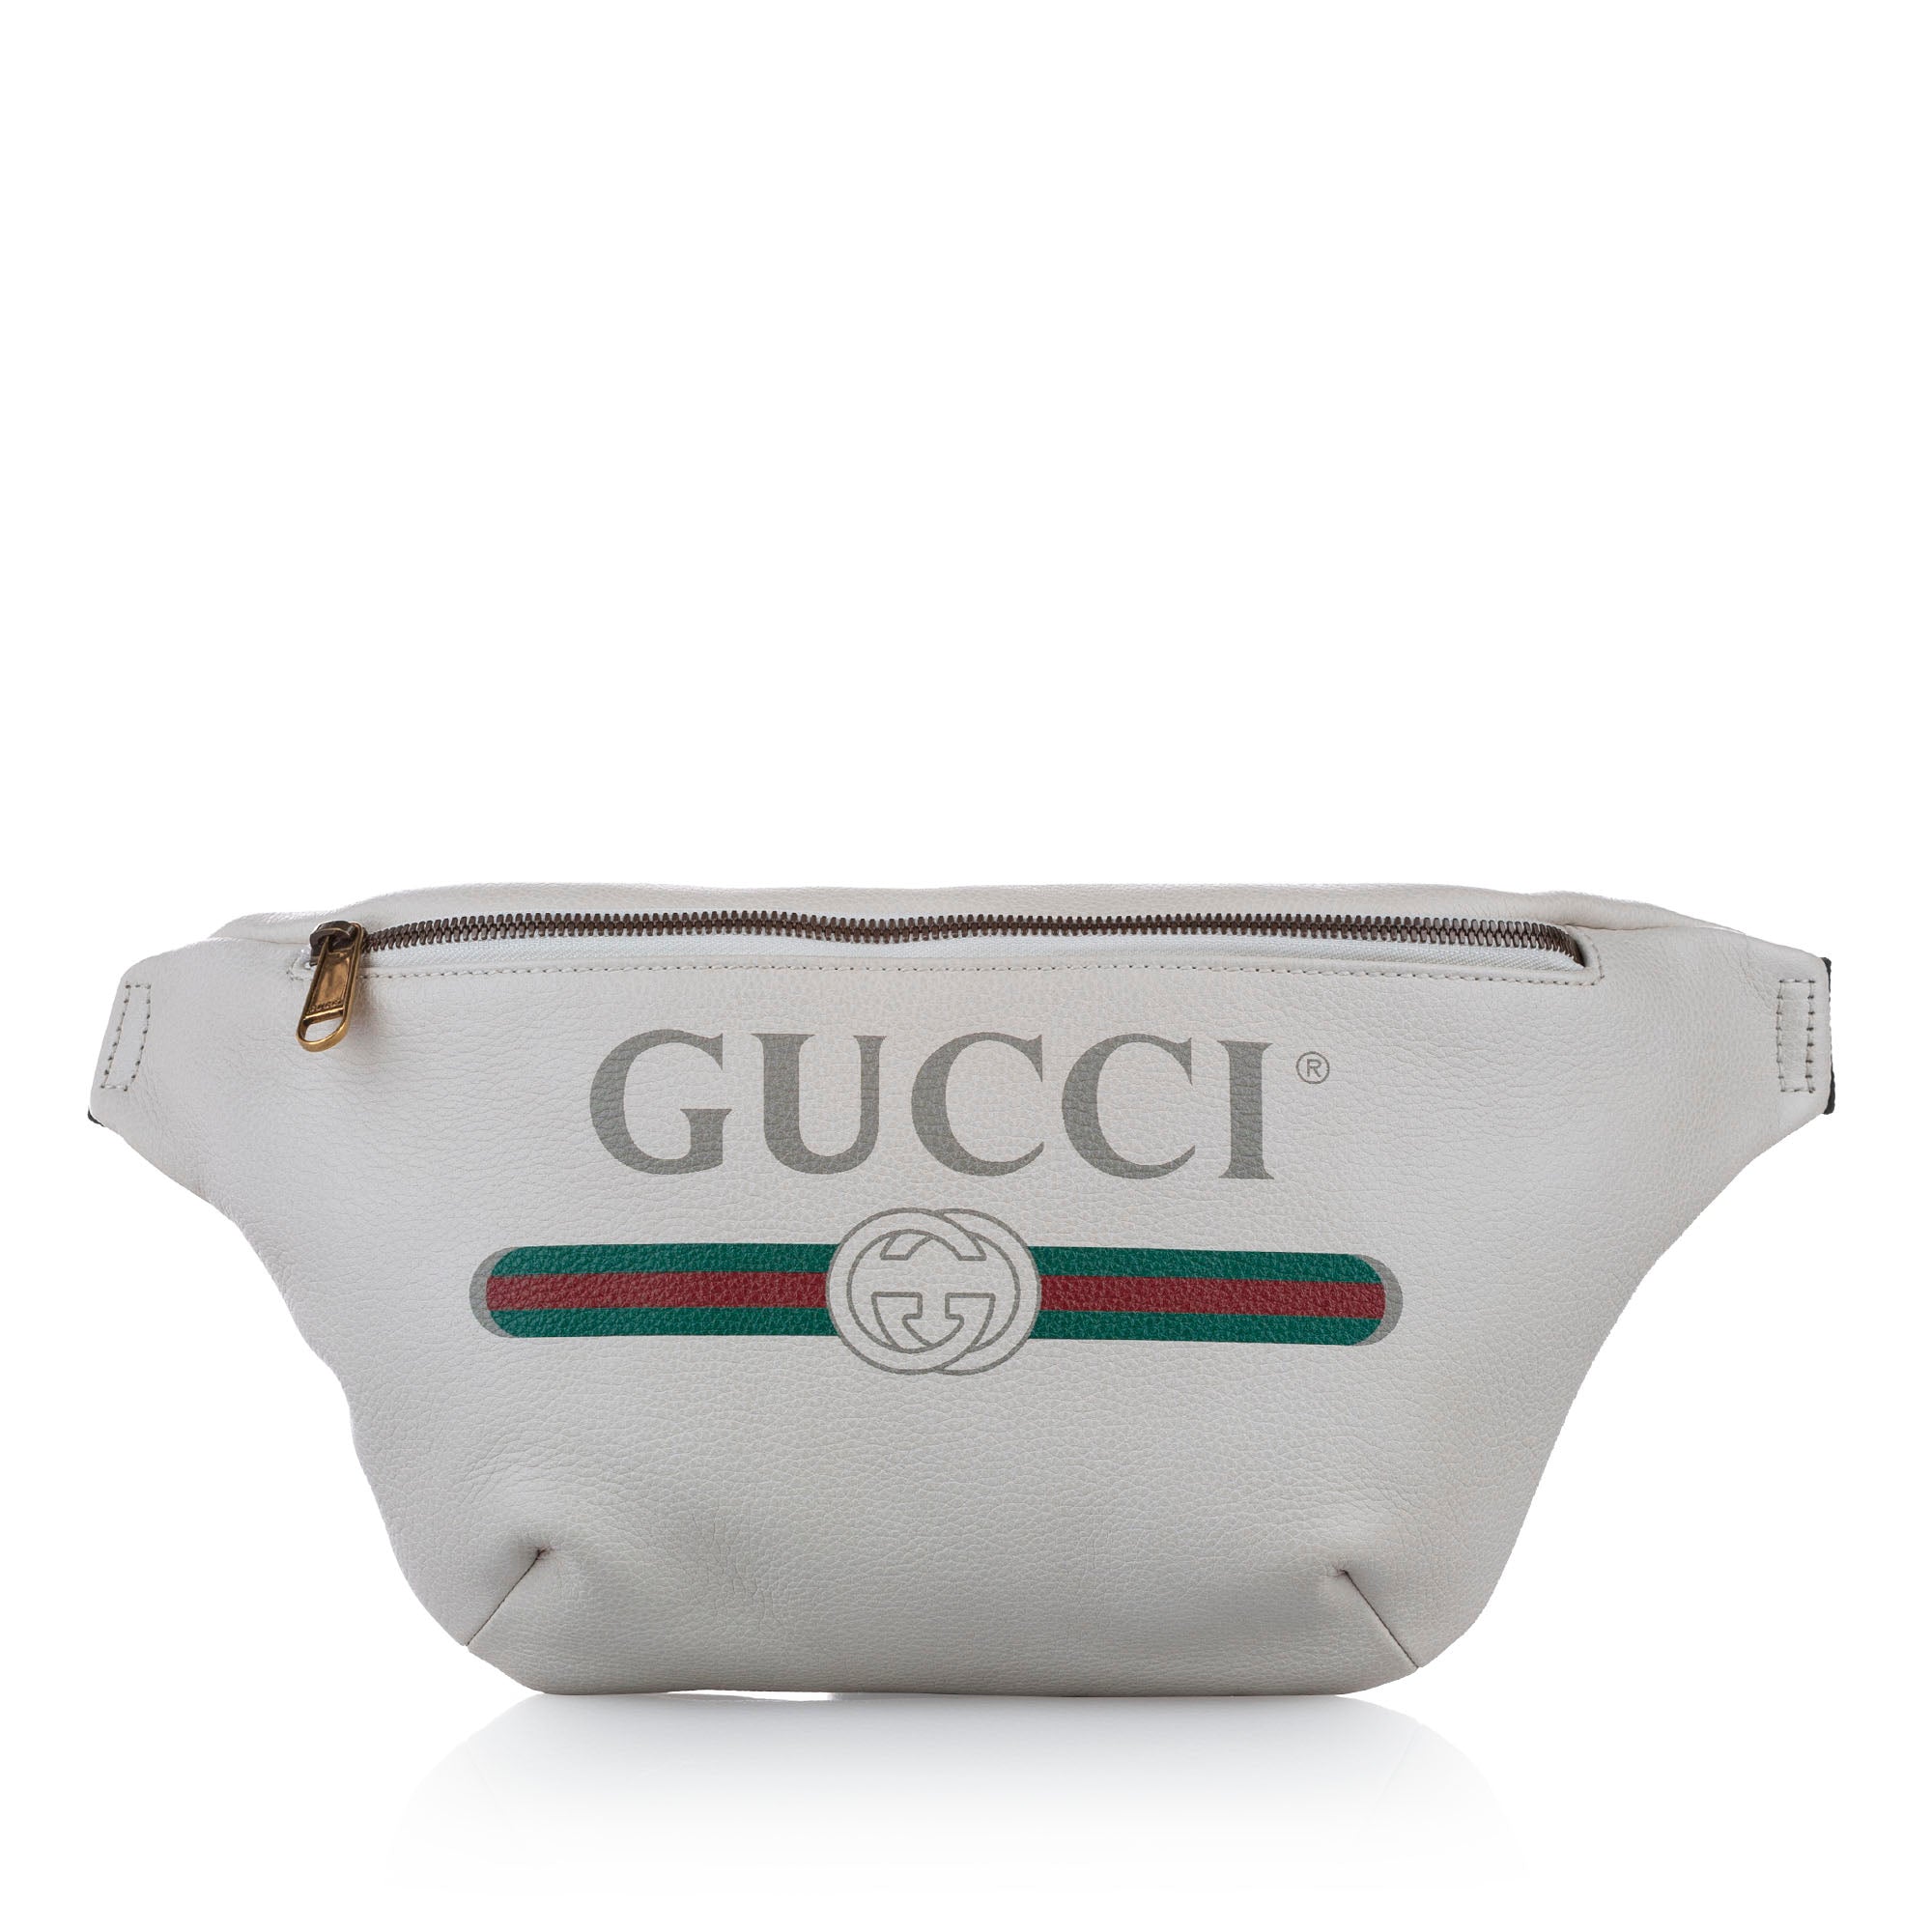 gucci belt bag 2018